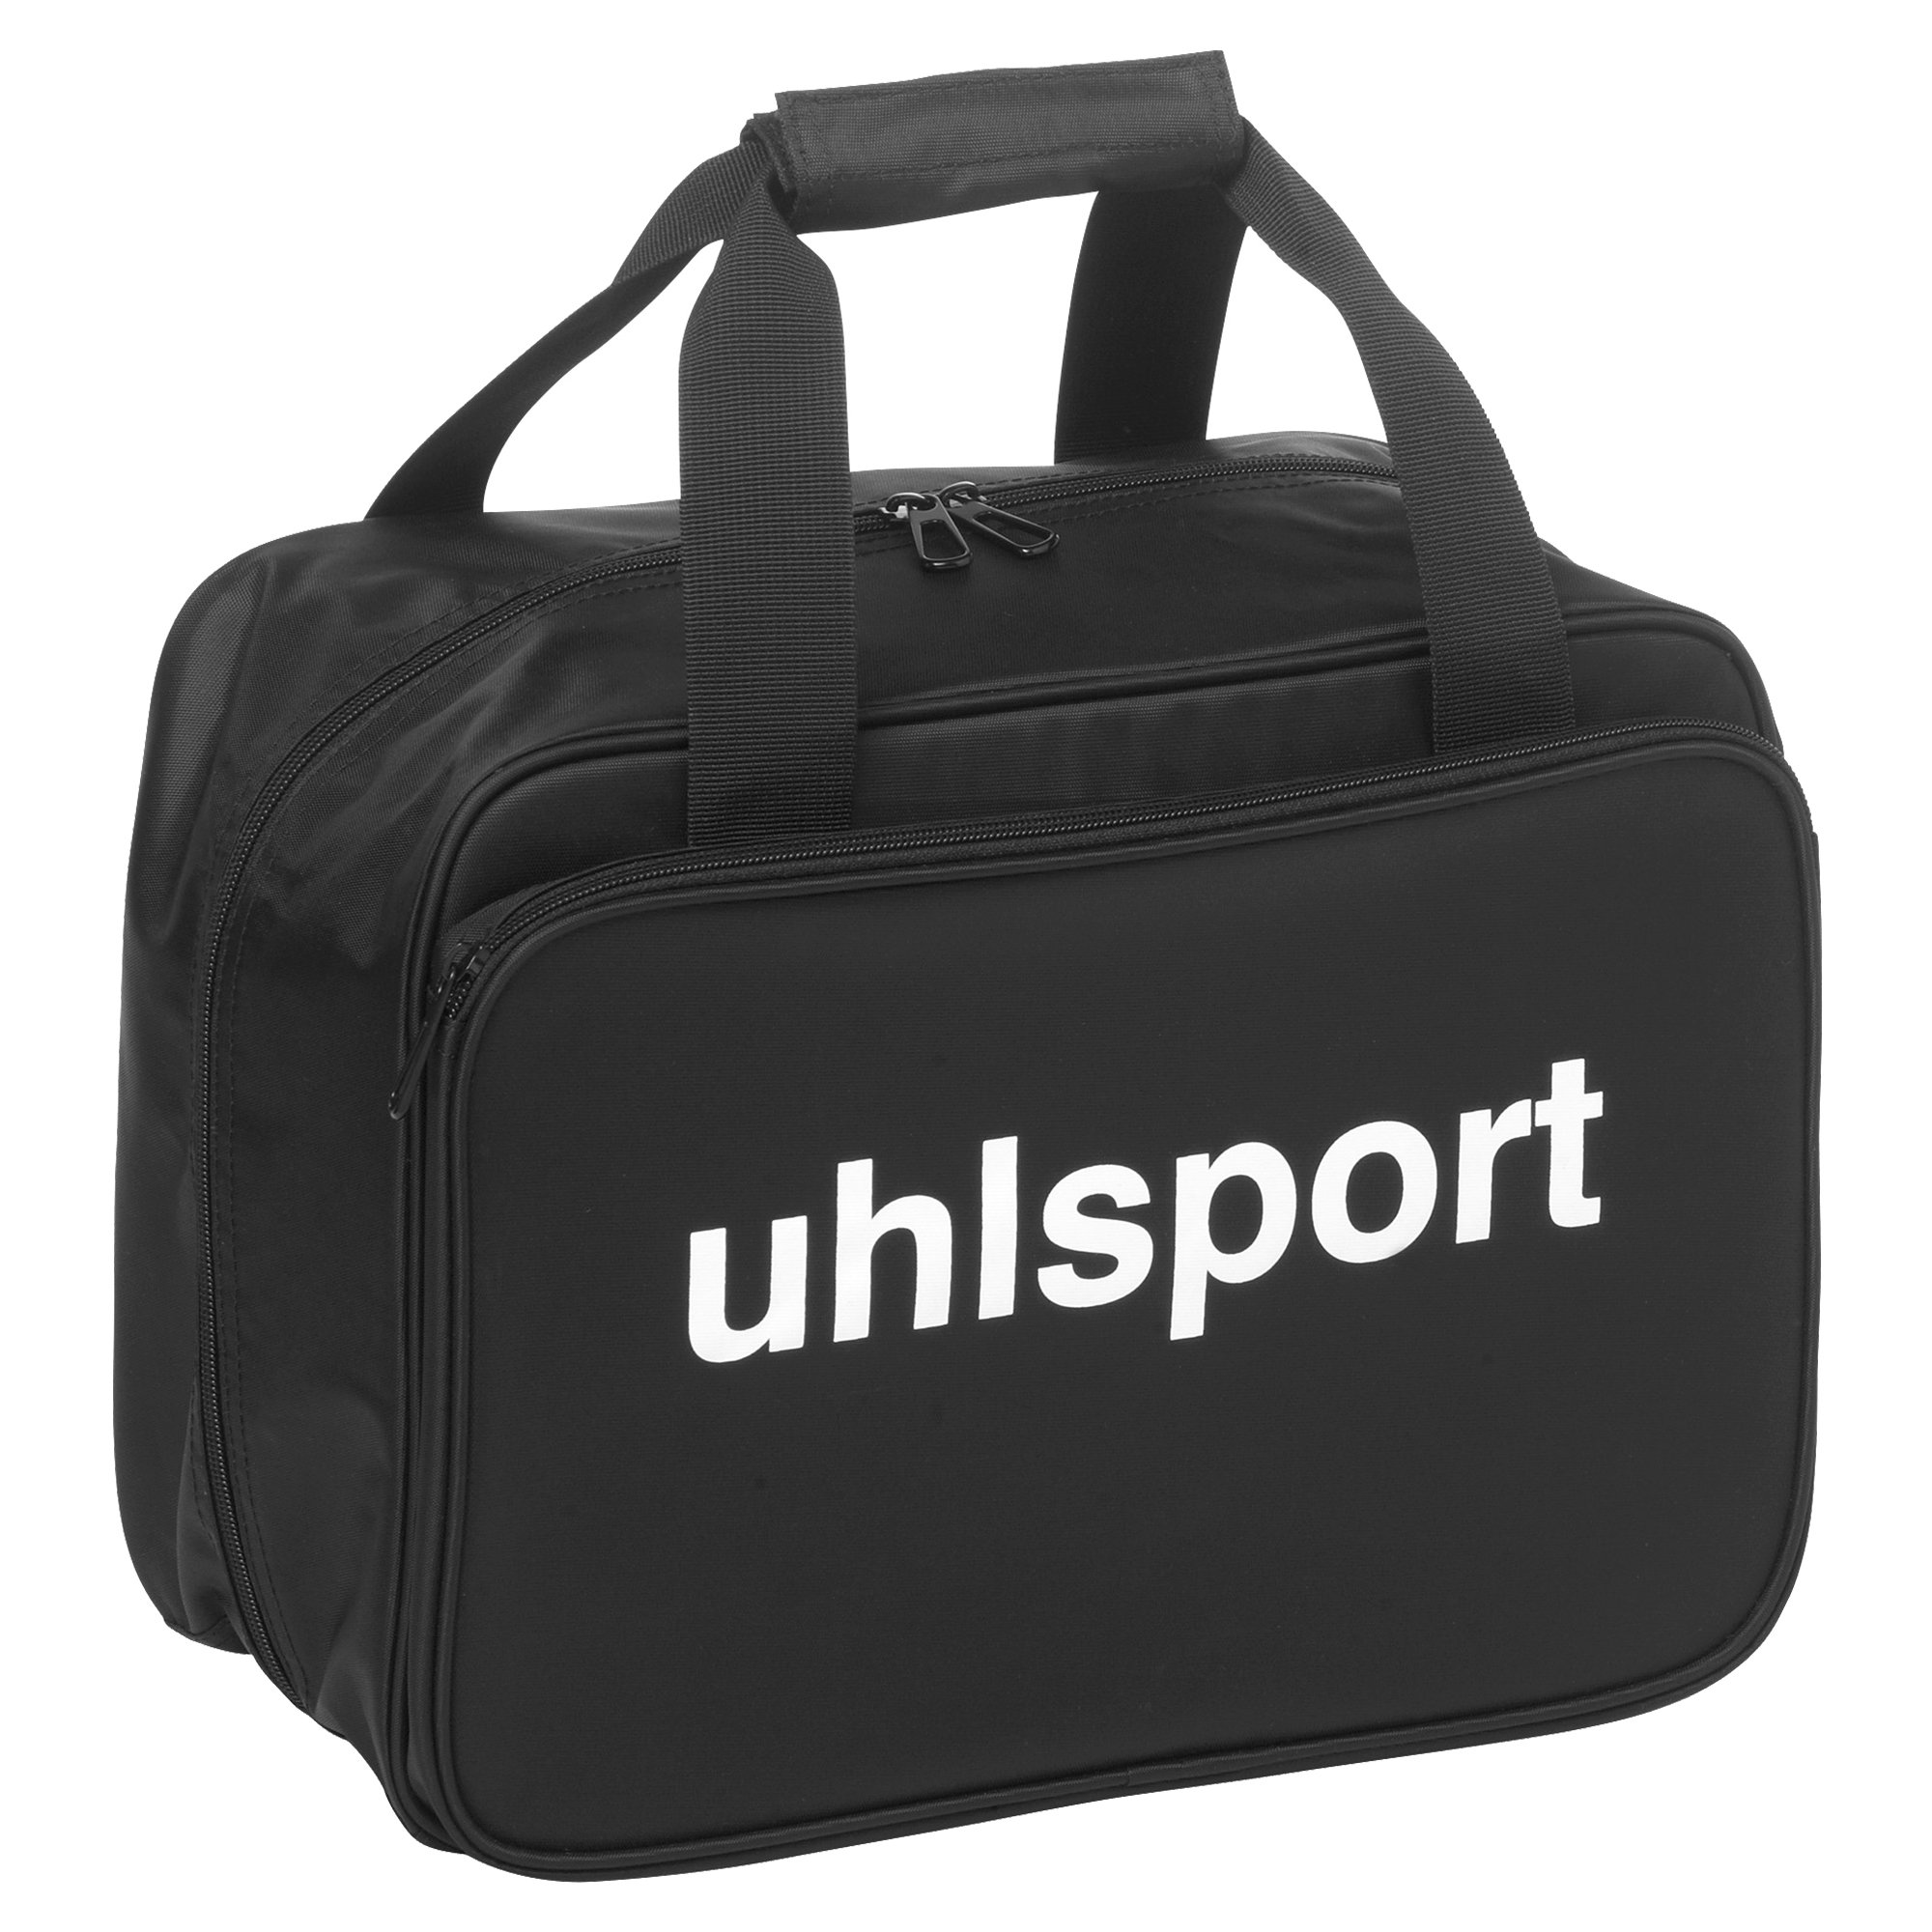 Uhlsport Medical Bag